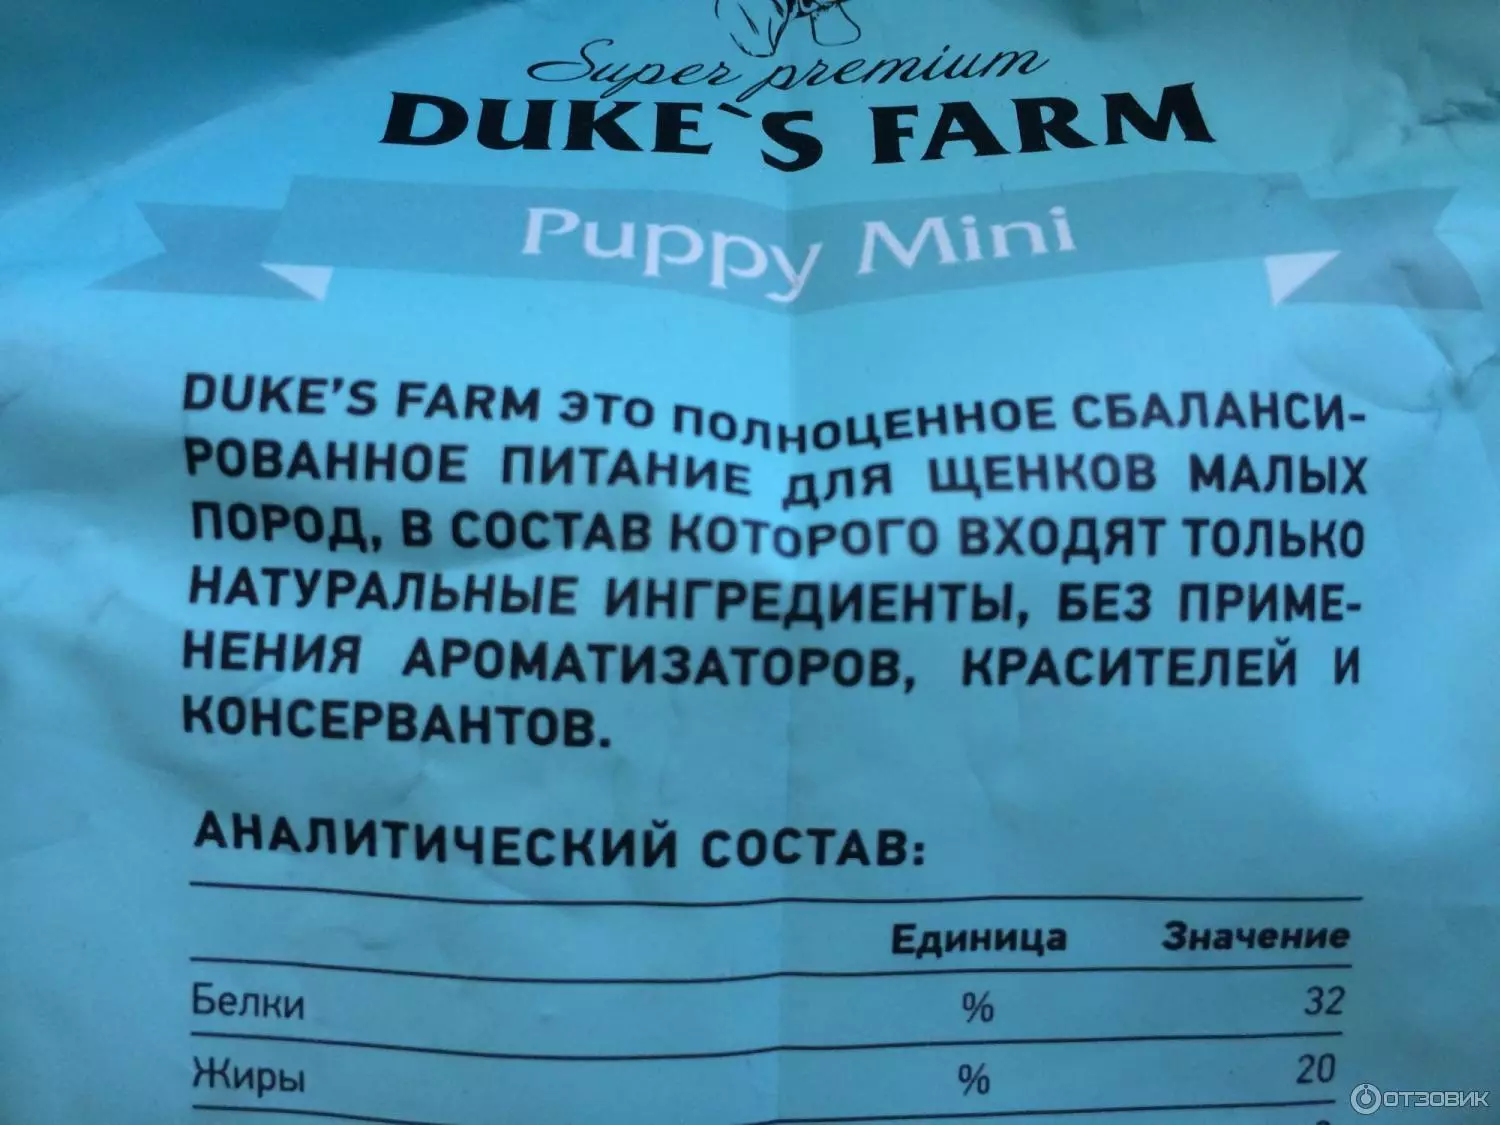 Duke의 농장 개 사료 : 강아지와 크고 다른 품종의 개, 건조 식품 12 kg 및 젖은 번개 피드. 리뷰 리뷰 25076_7